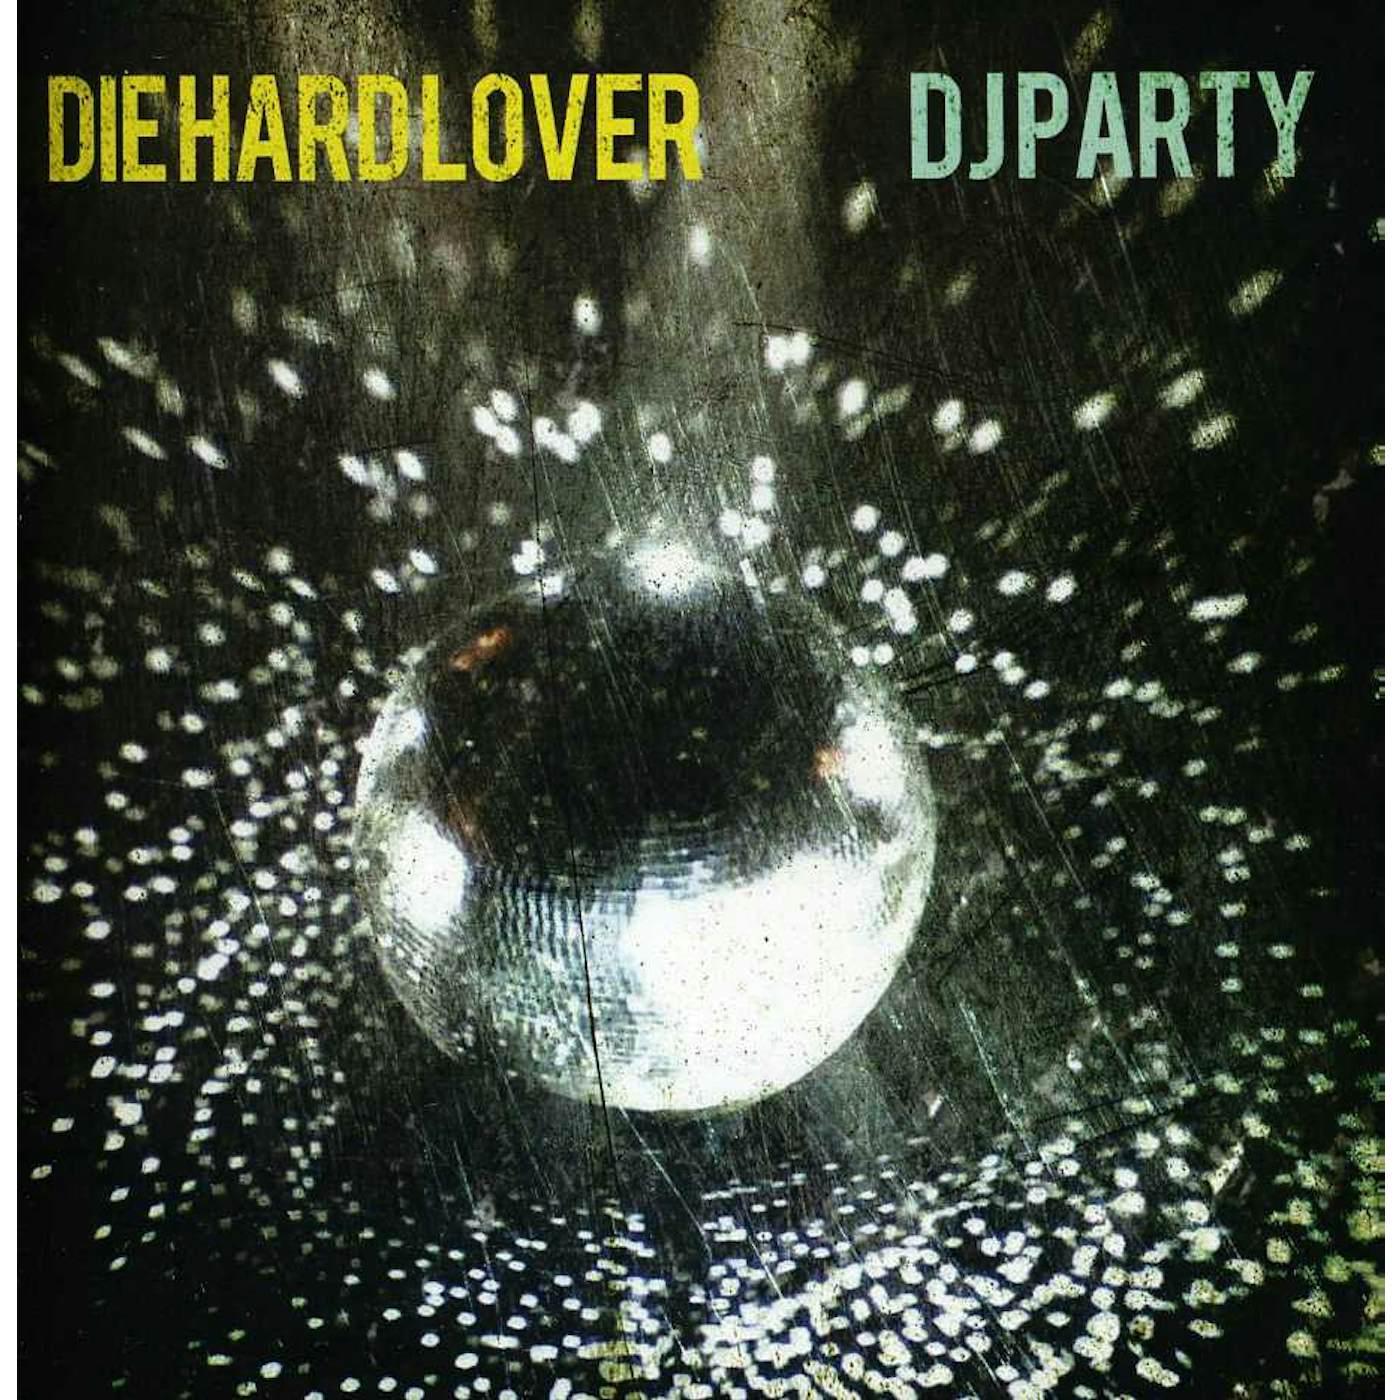 DJ Party DIE HARD LOVER CD